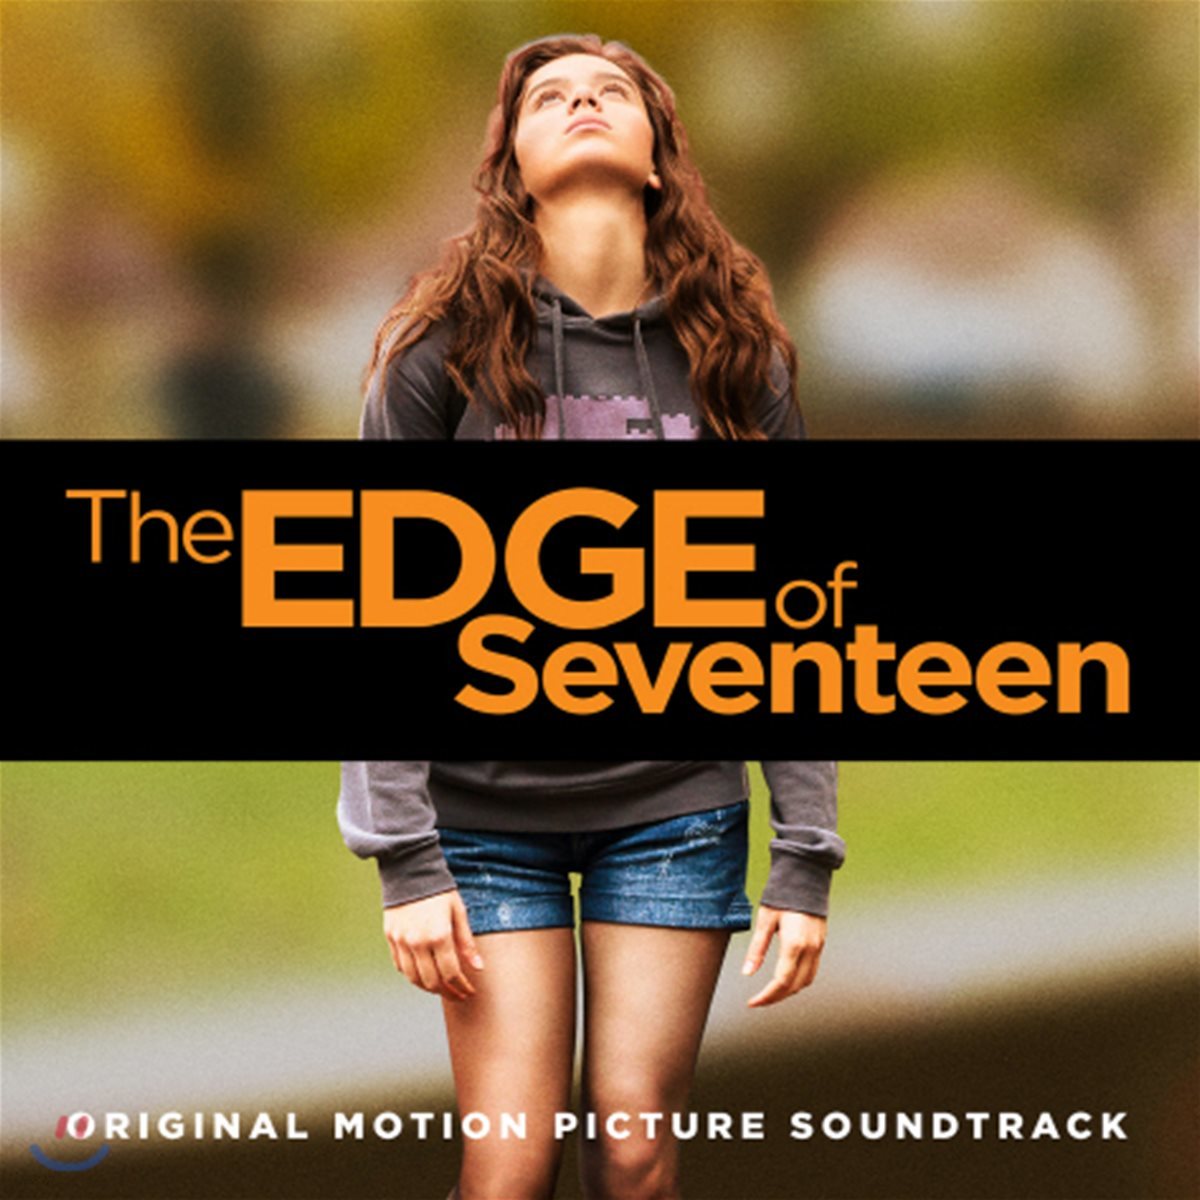 지랄발광 17세 영화음악 (The Edge Of Seventeen OST)